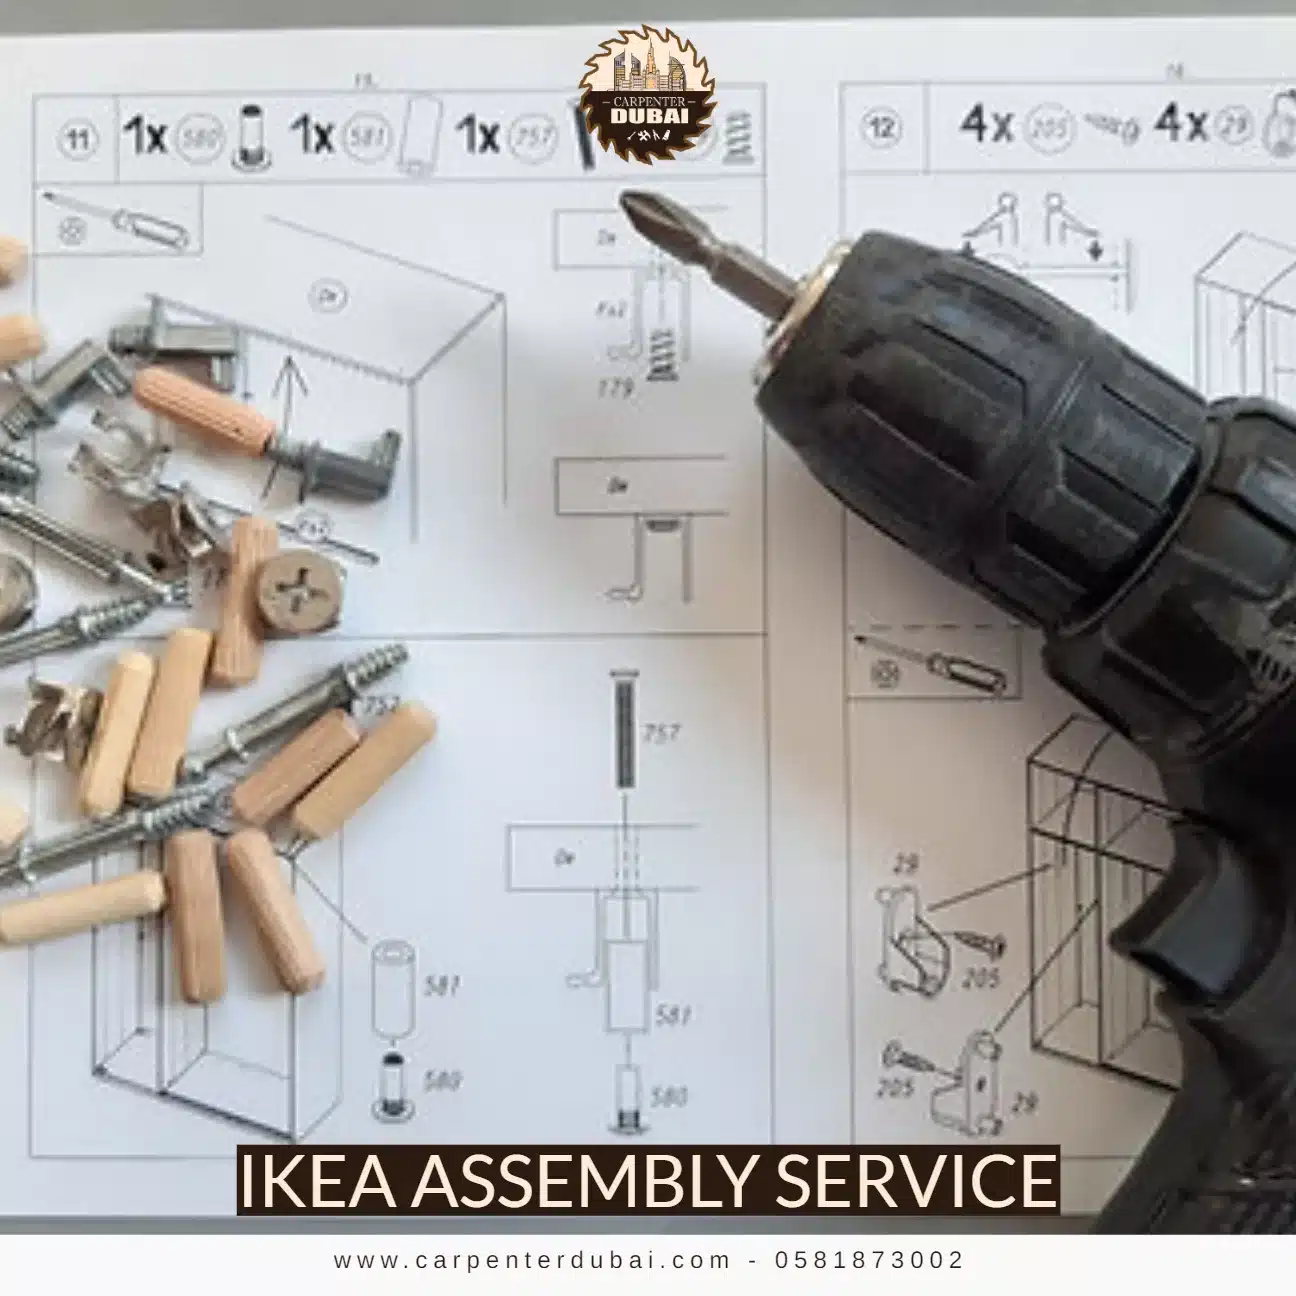 Ikea assembly service